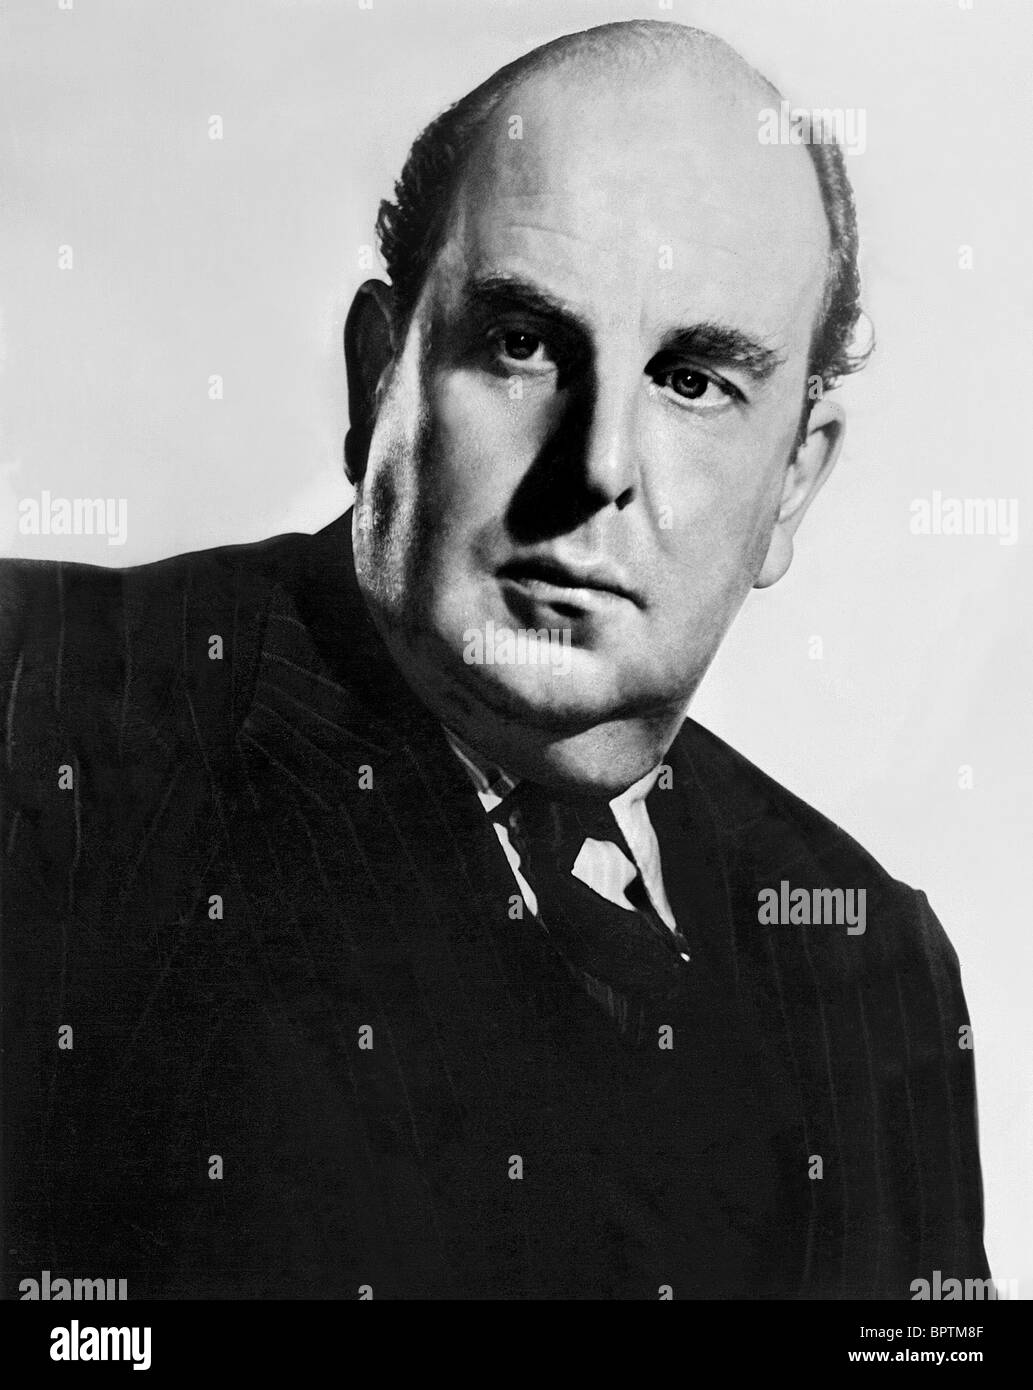 ROBERT MORLEY ACTOR (1957 Stock Photo - Alamy